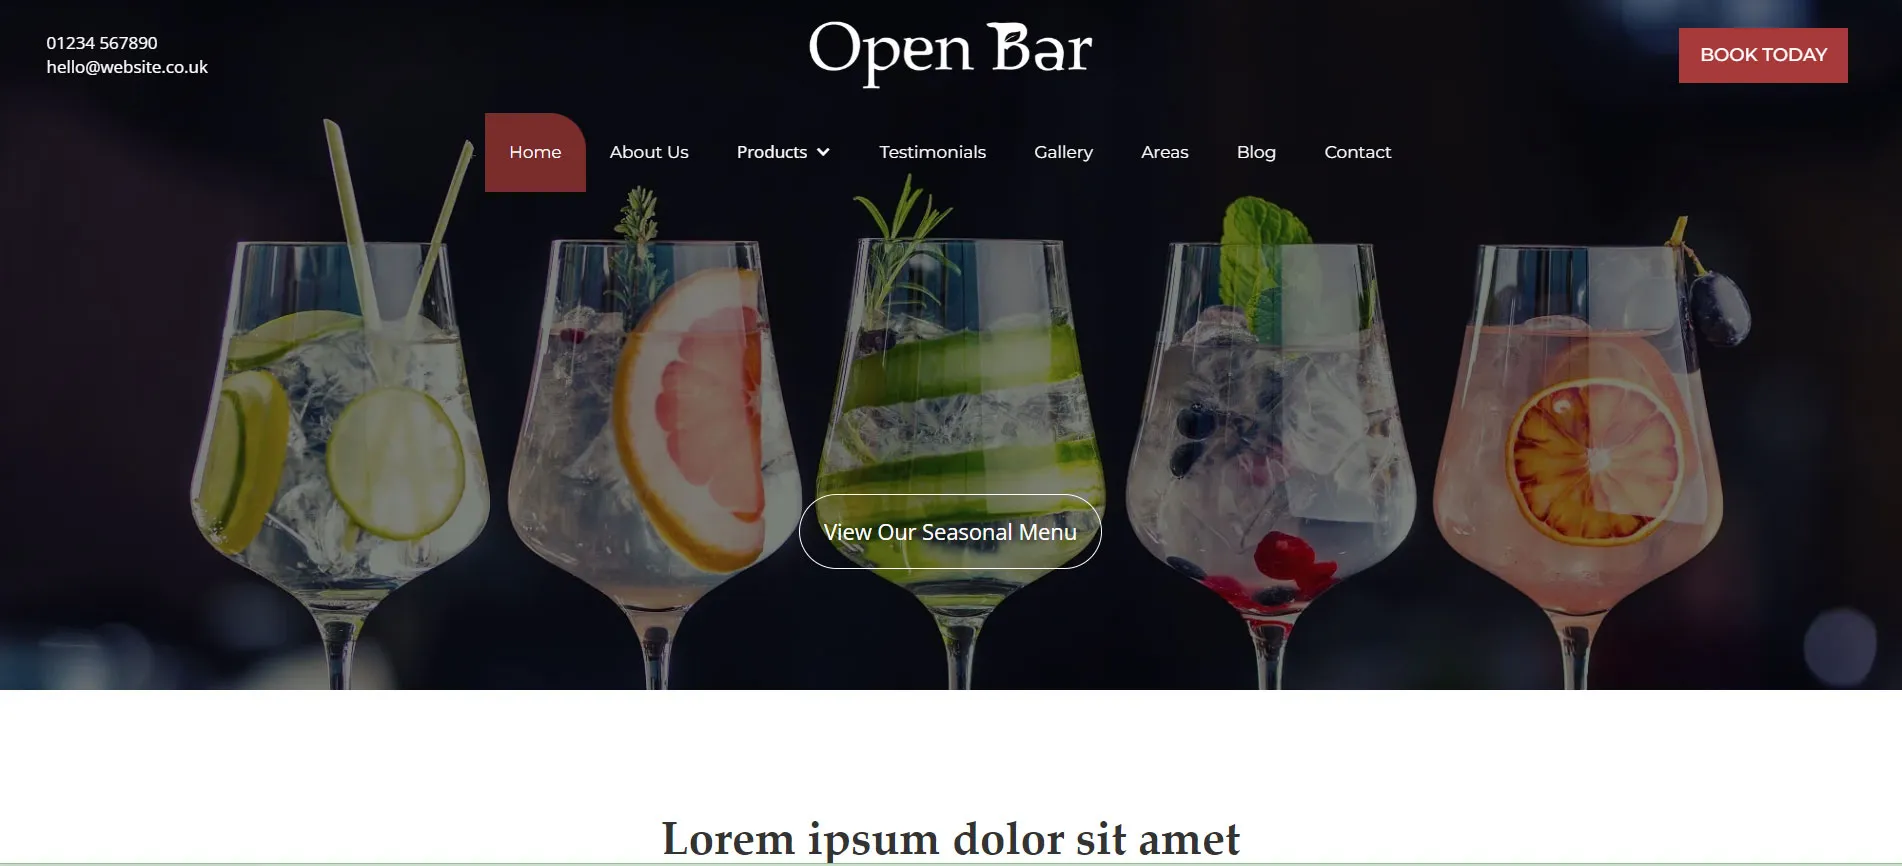 Open Bar Website Theme